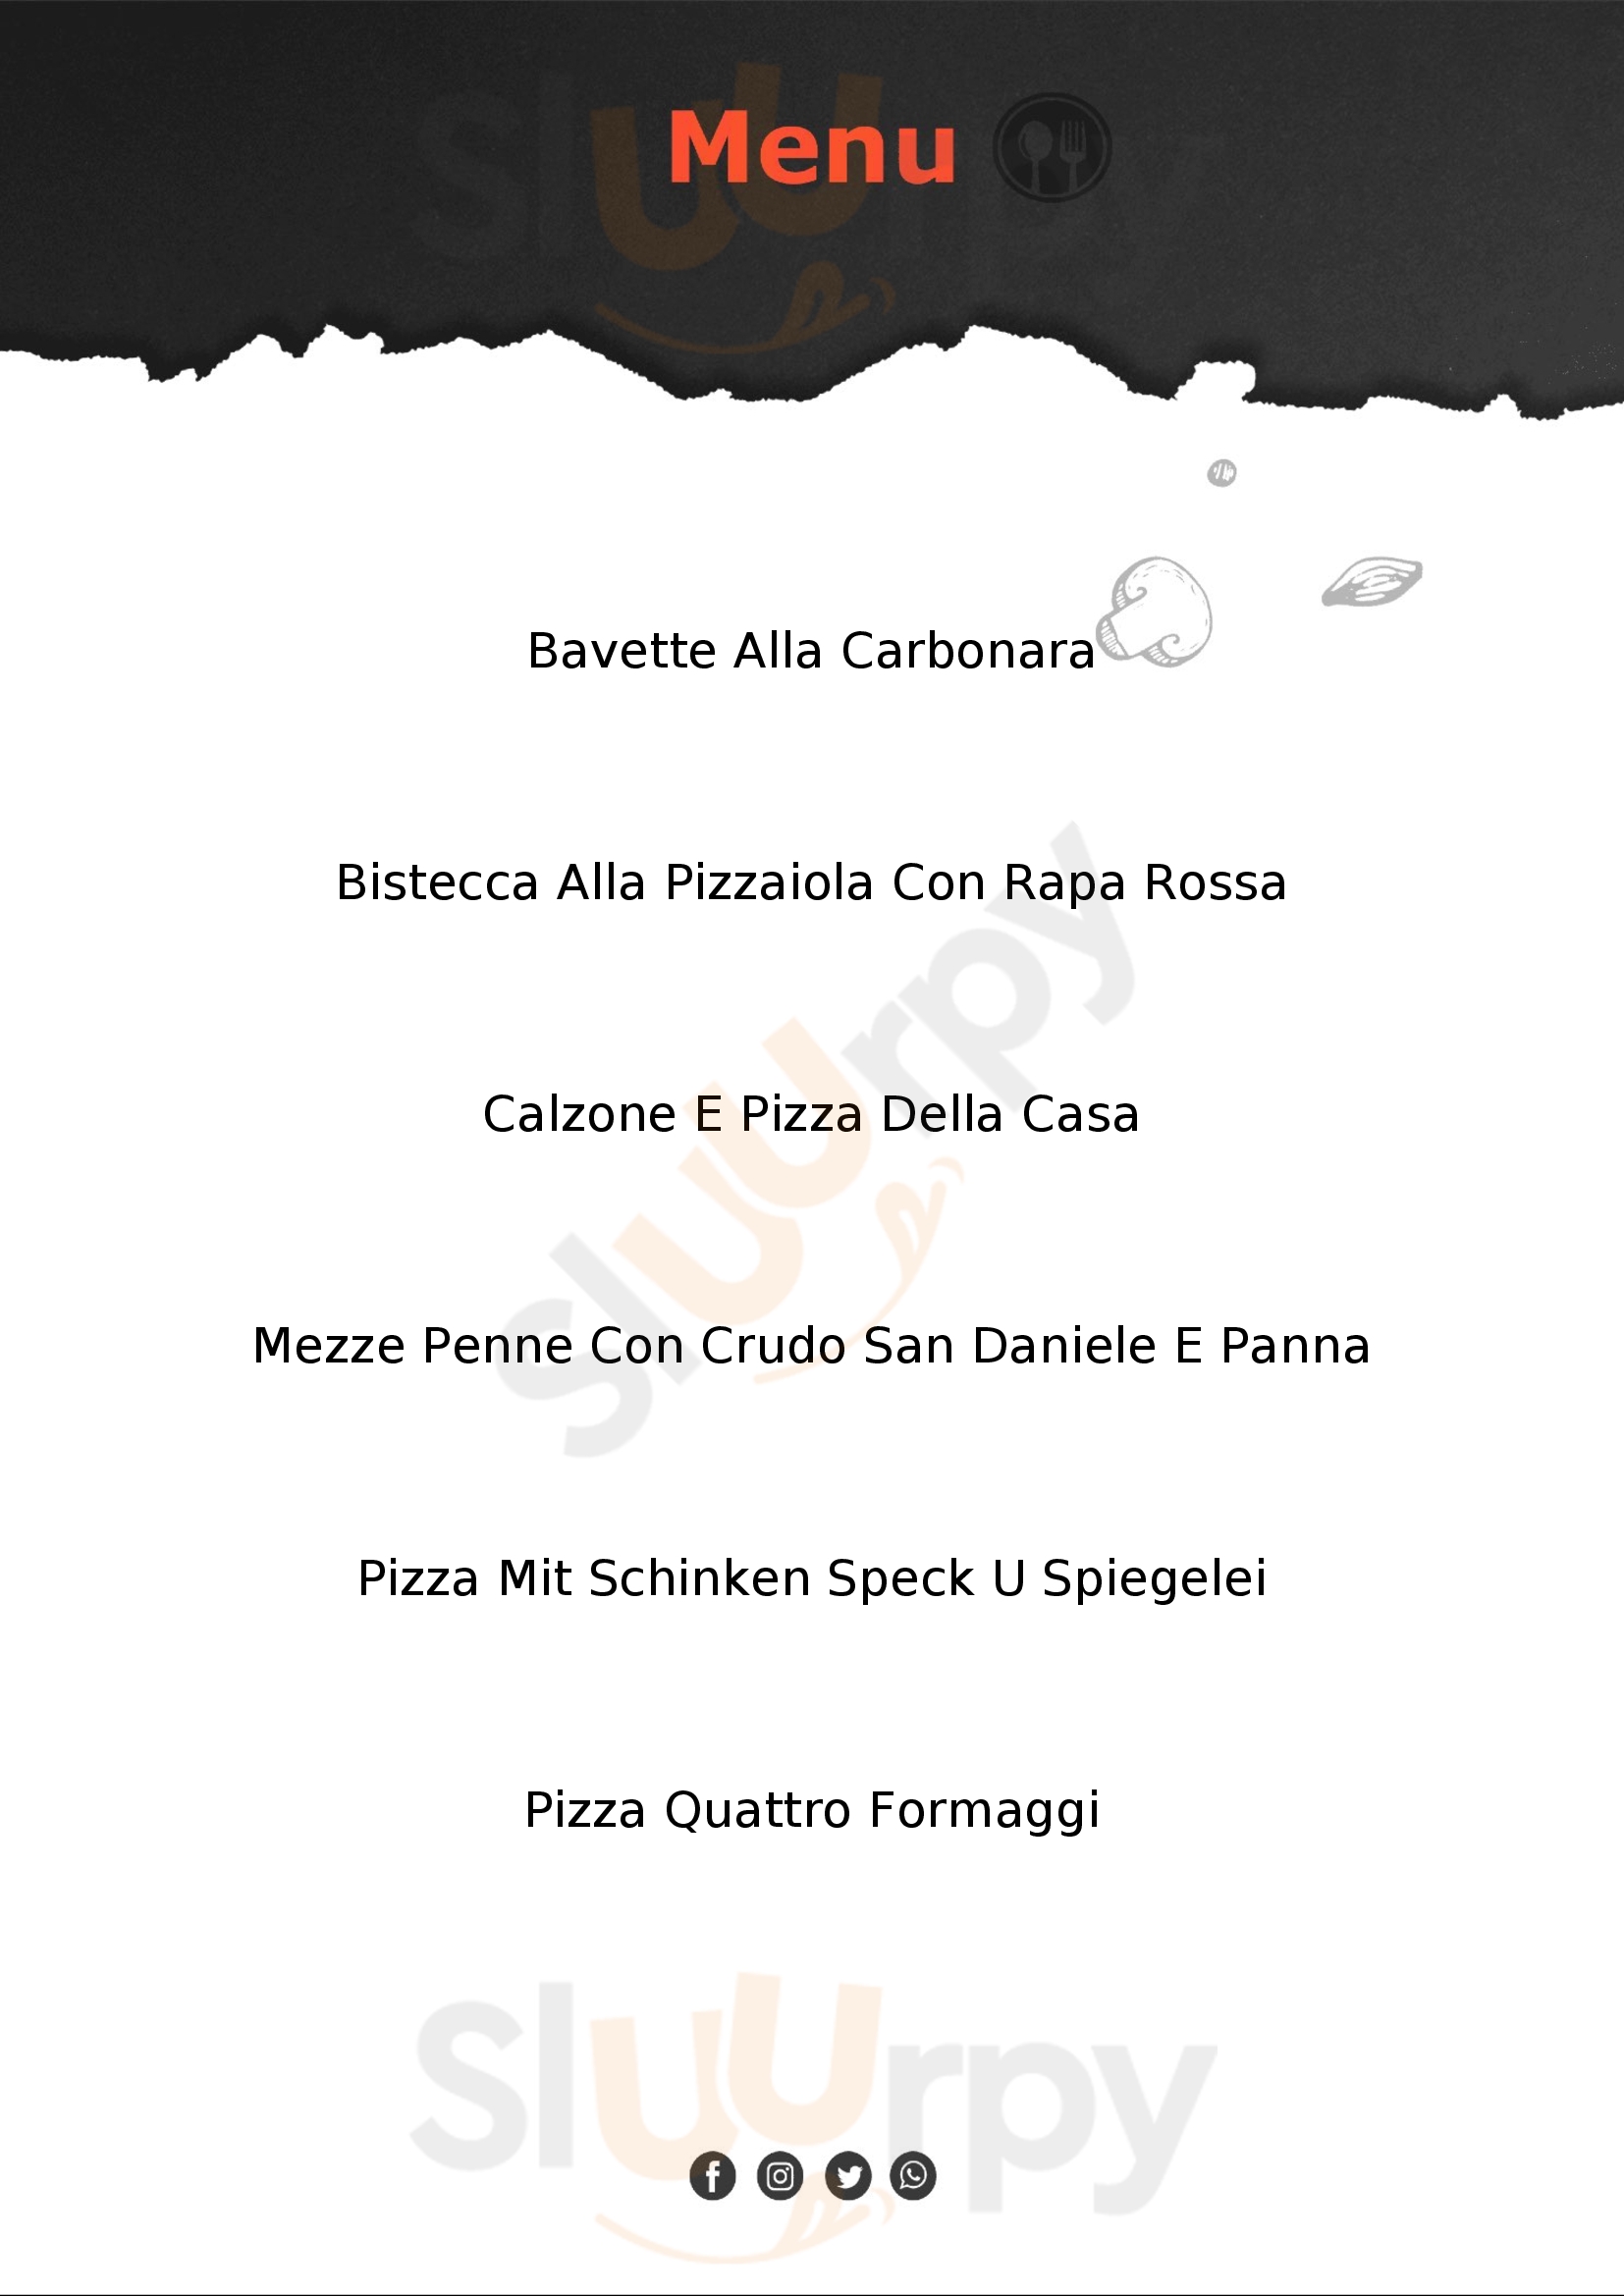 Pizzeria-Trattoria "Al Sentiron" Prata di Pordenone menù 1 pagina